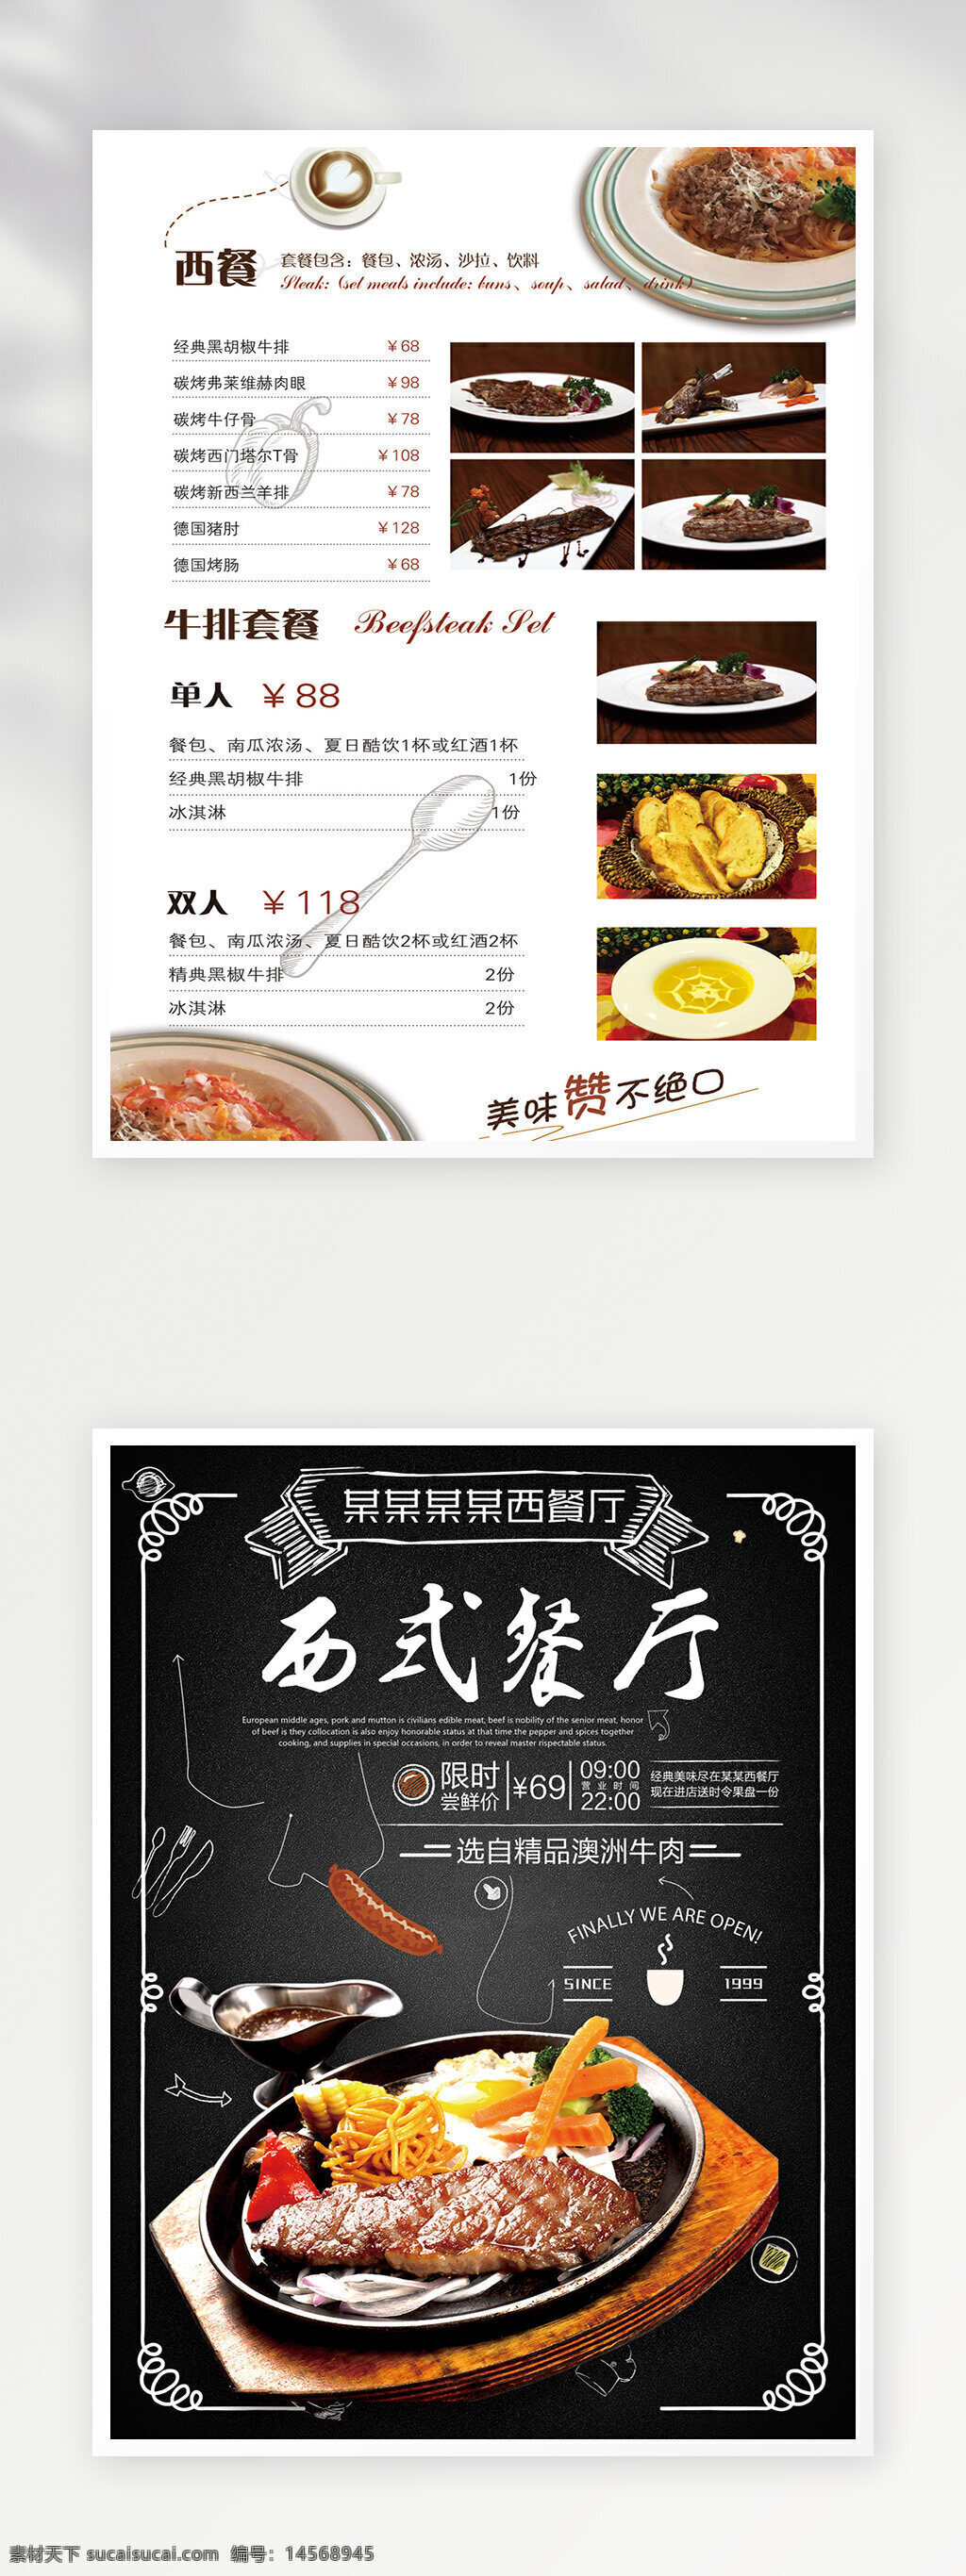 菜单广告 价目表 菜谱设计 菜单设计 菜单菜谱 菜单 点餐单 菜单模板